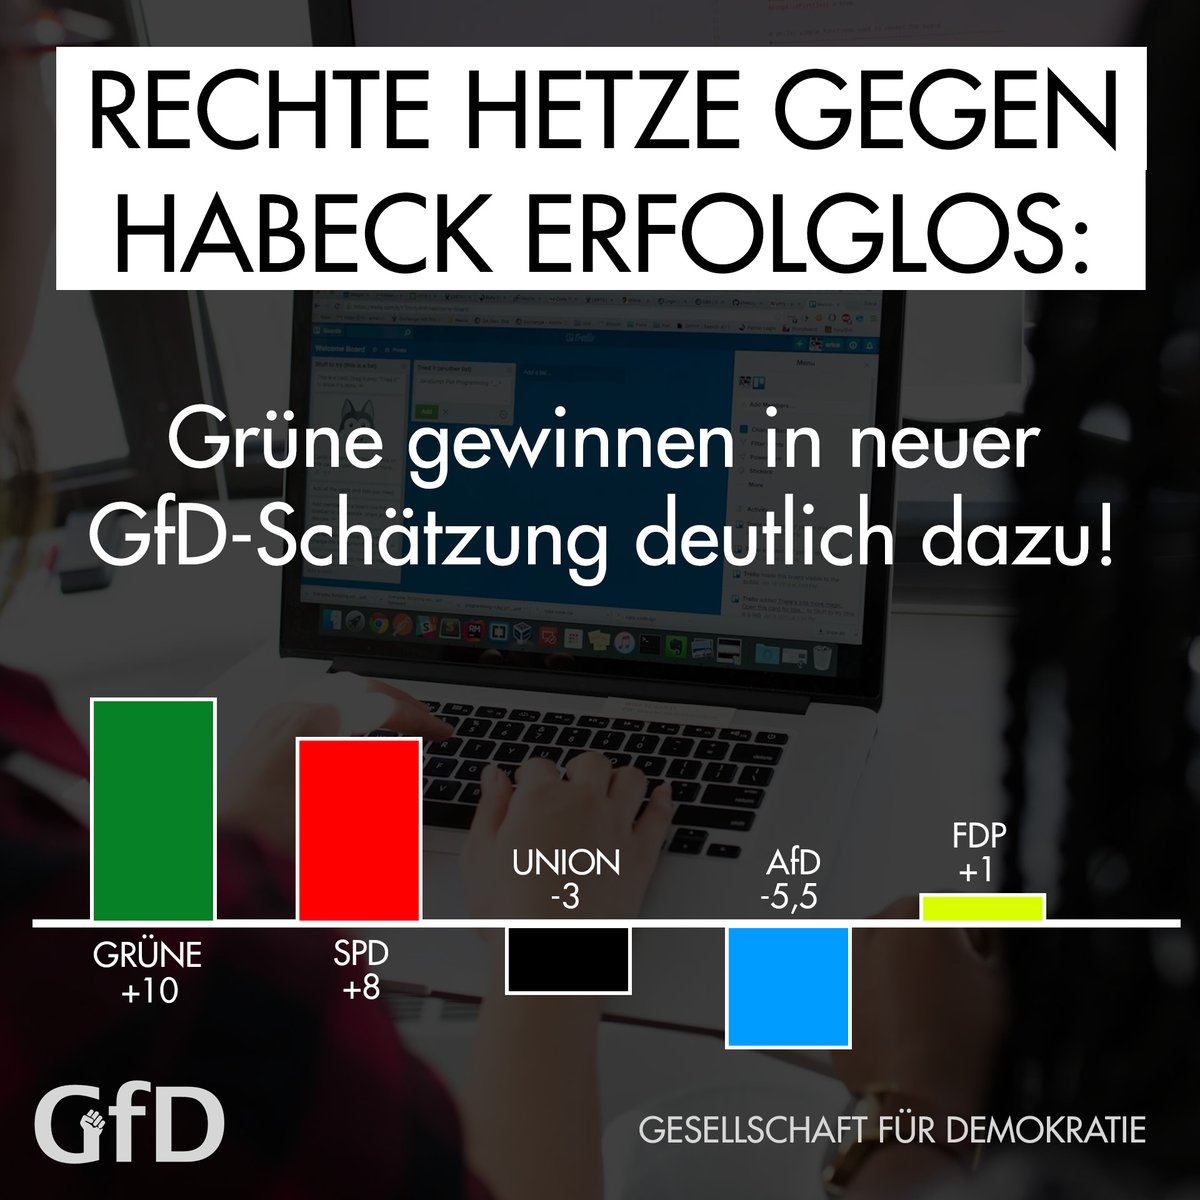 Die rechte Hetze gegen Robert #Habeck bleibt nach aktueller GfD-Schätzung erfolglos - die Wählenden sind schlau genug zu erkennen, dass unser Wirtschaftsminister einen wahnsinnig guten Job macht.

GRÜNE 33% (+10)
SPD 24% (+8)
UNION 29% (-3)
AfD 13% (-5,5)
FDP 7% (+1)